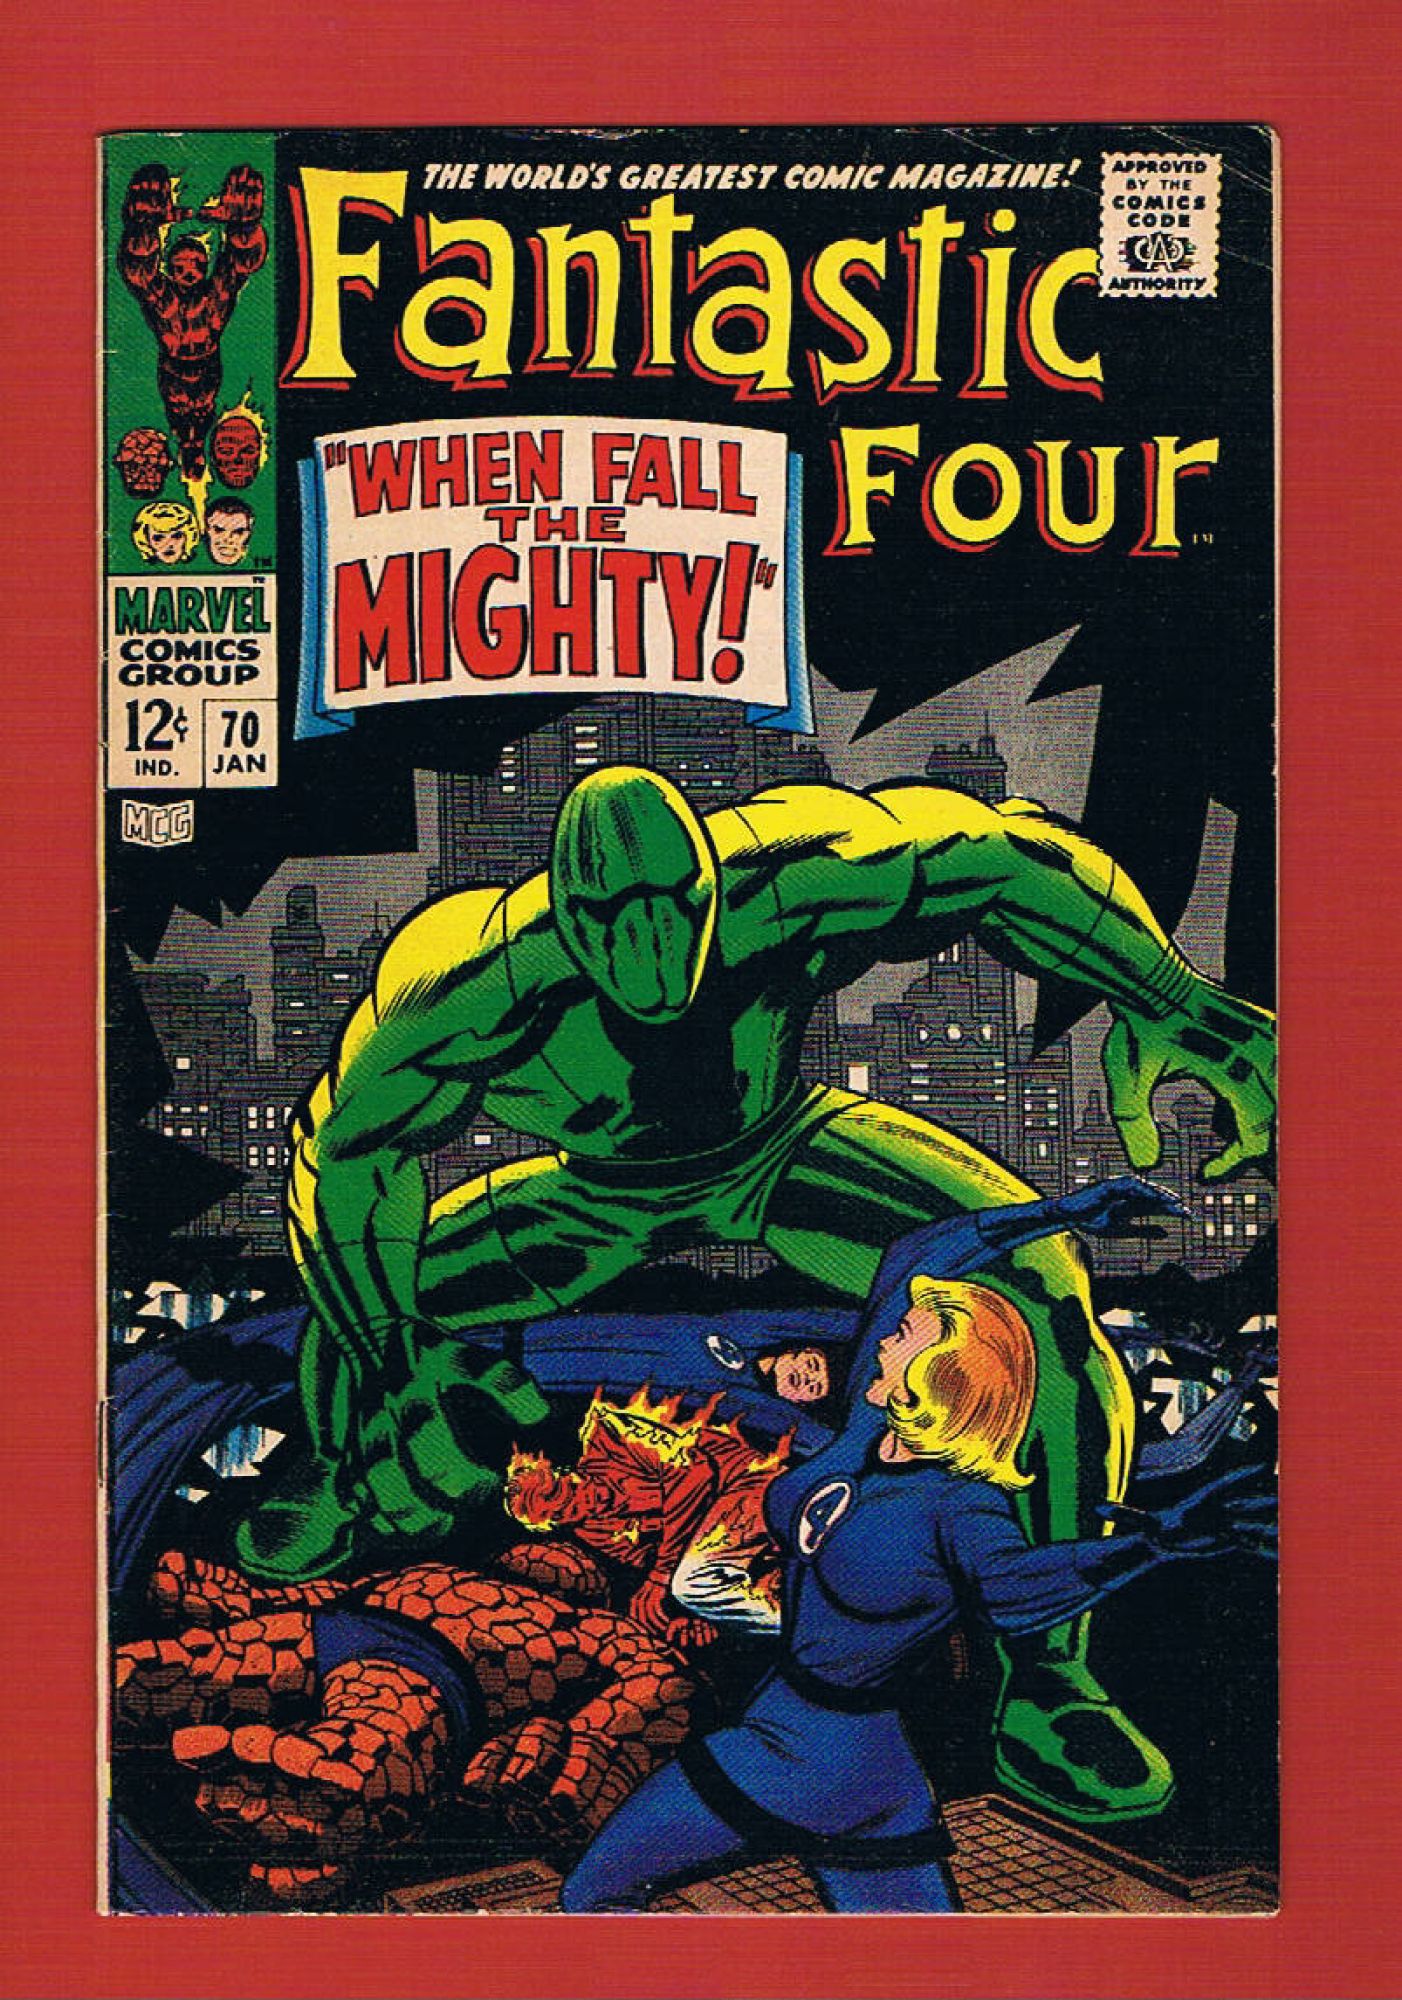 Fantastic Four #70, Jan 1968, 6.0 FN